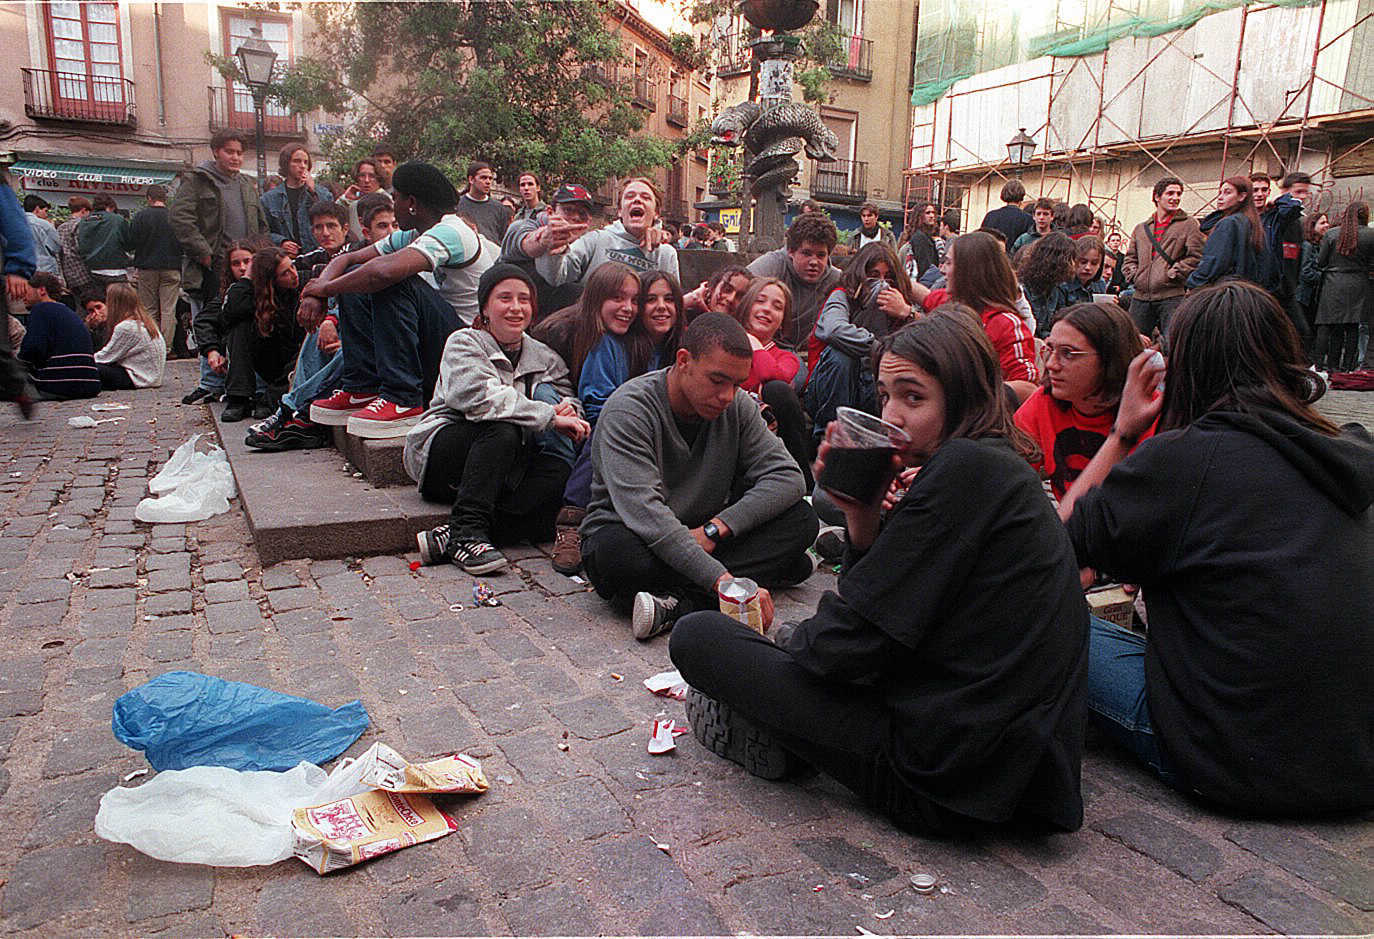 Jvenes de botelln en la plaza de San Ildefonso, en 1997.